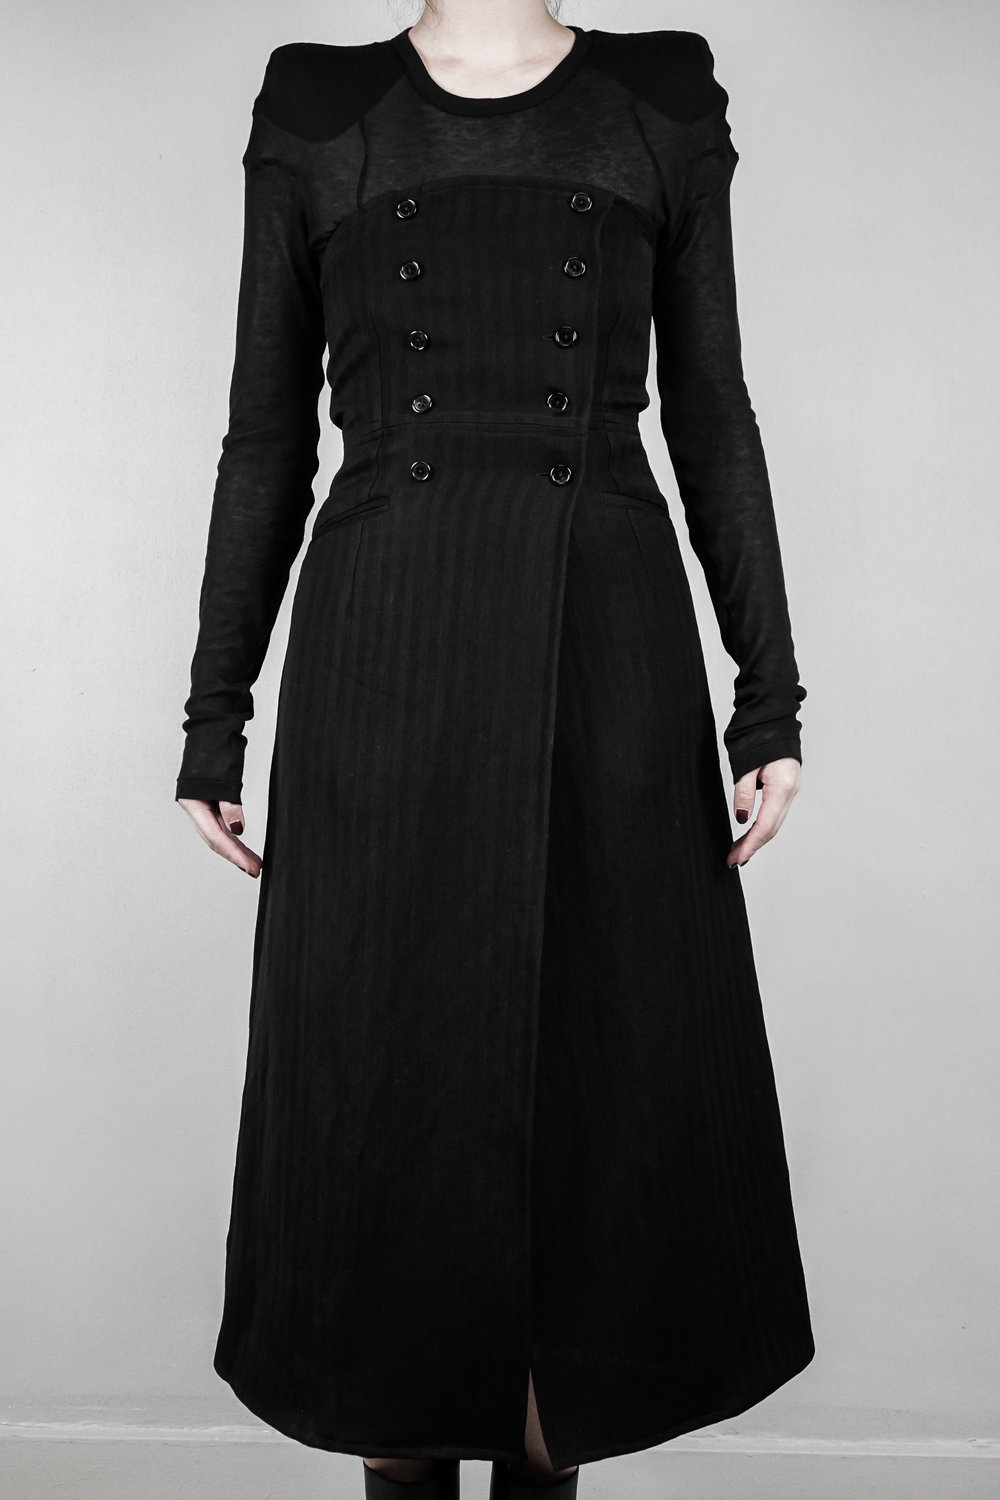 Ann Demeulemeester – Womens – Long Skirt – Striped – Black – Fleecewool / Acetate – Double Breasted – High Waist